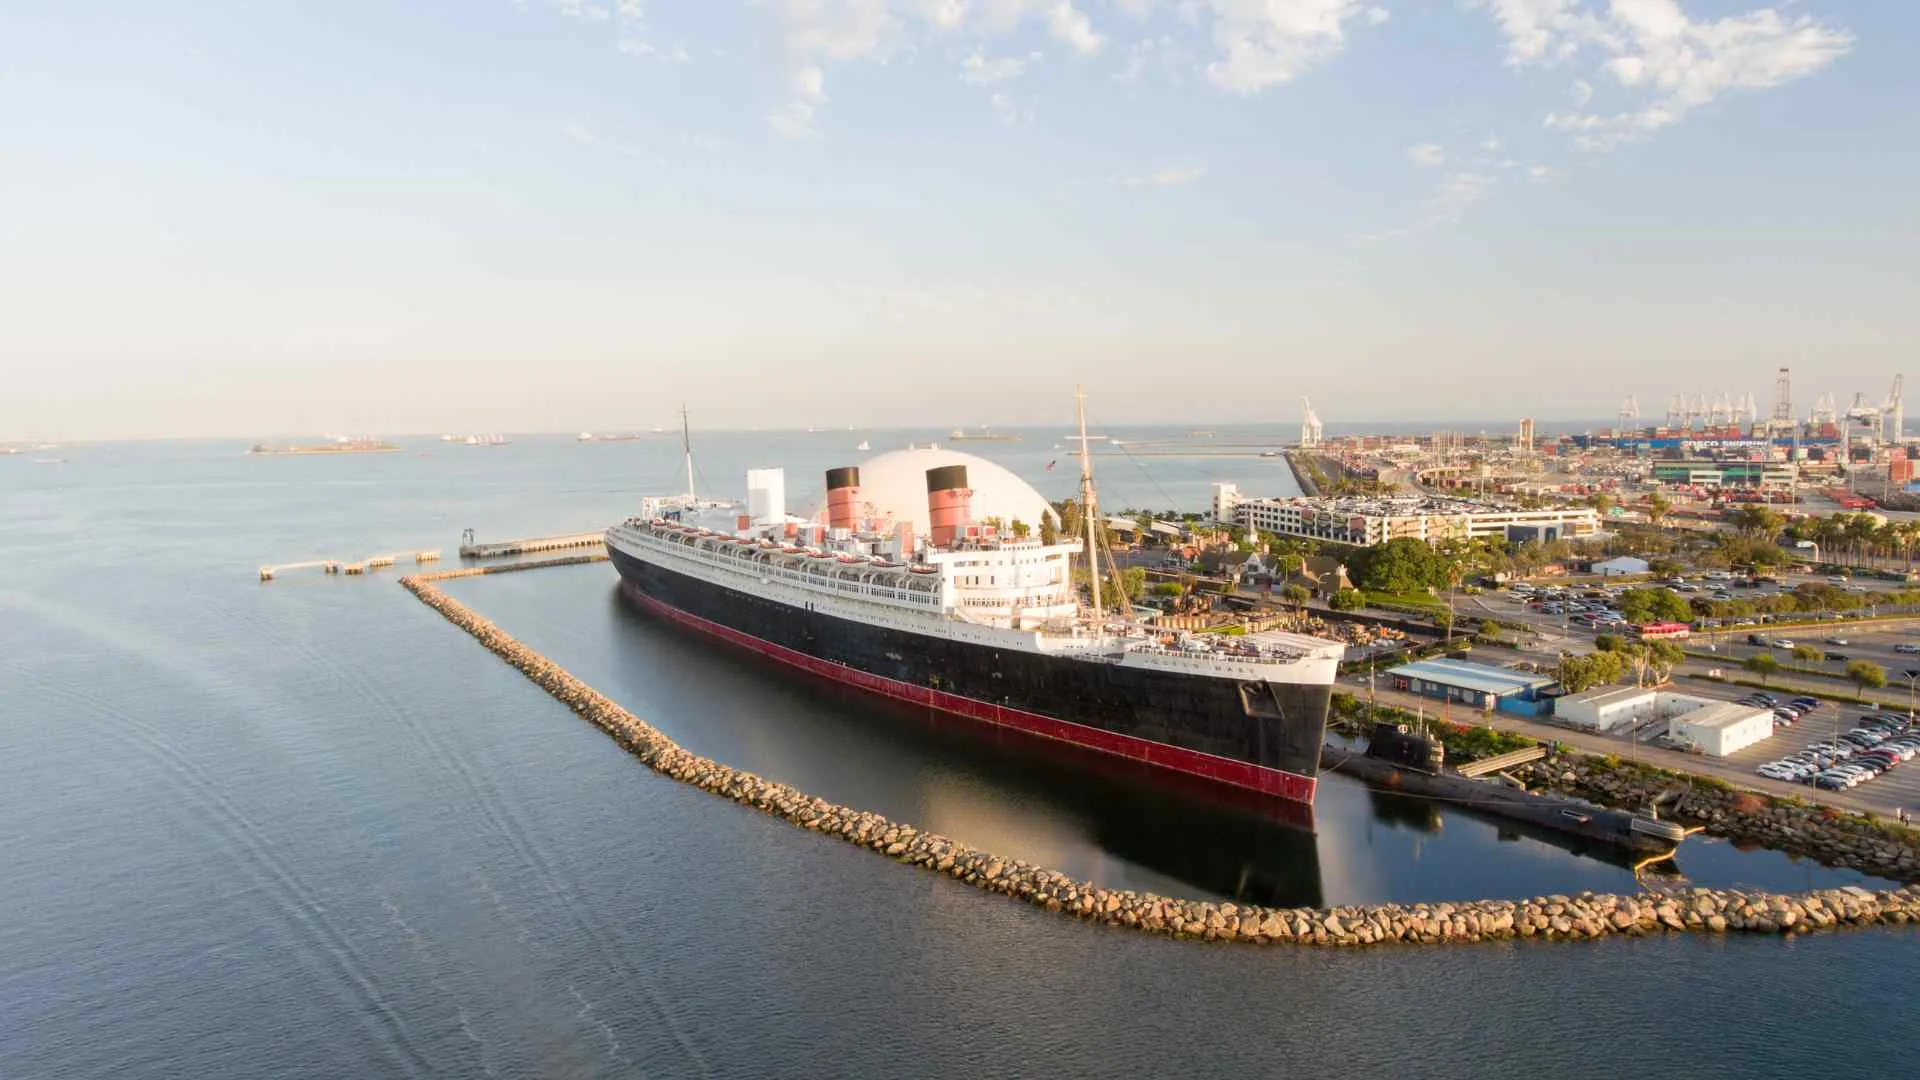 Queen Mary 2 in port